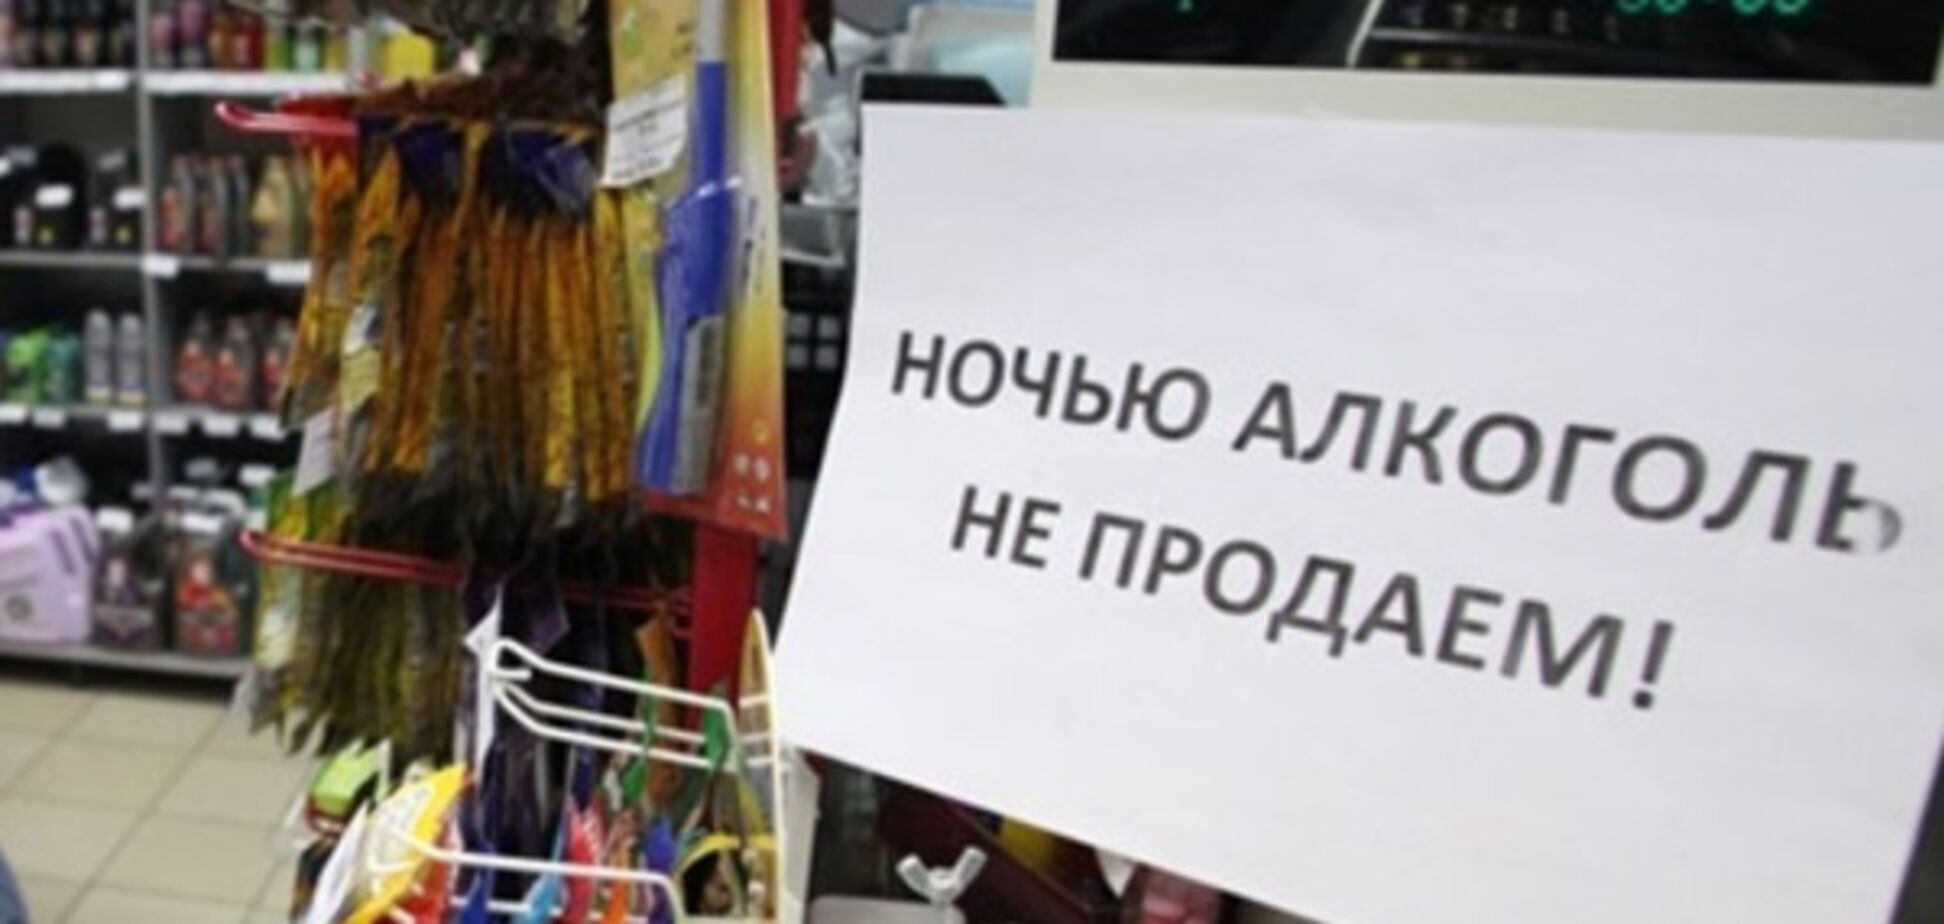 Продаж алкоголю у Києві